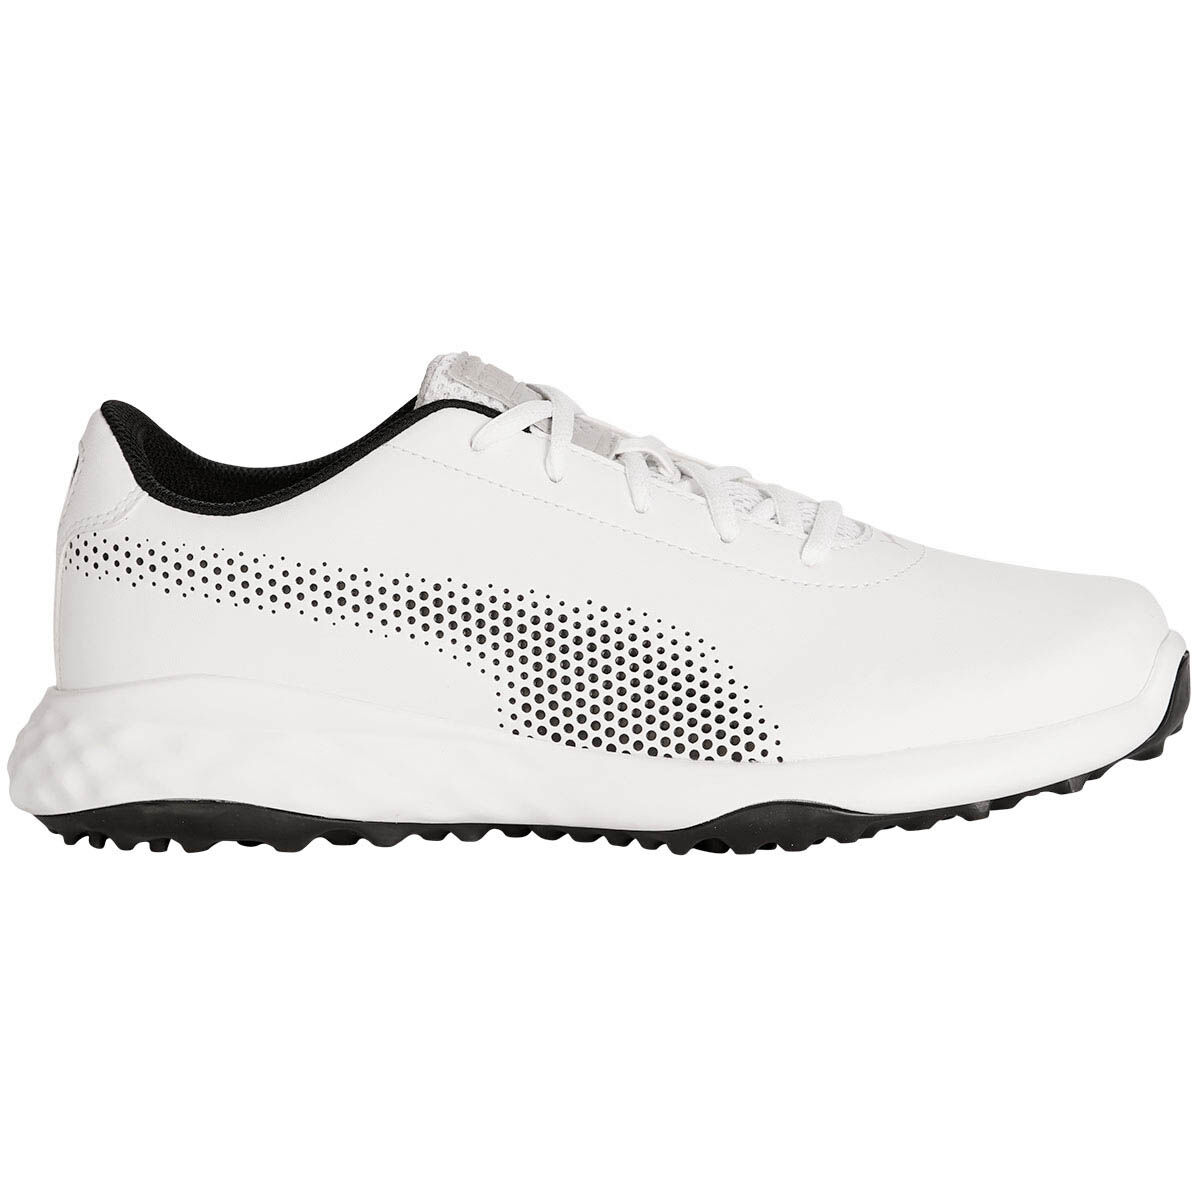 puma men's spikeless golf shoes